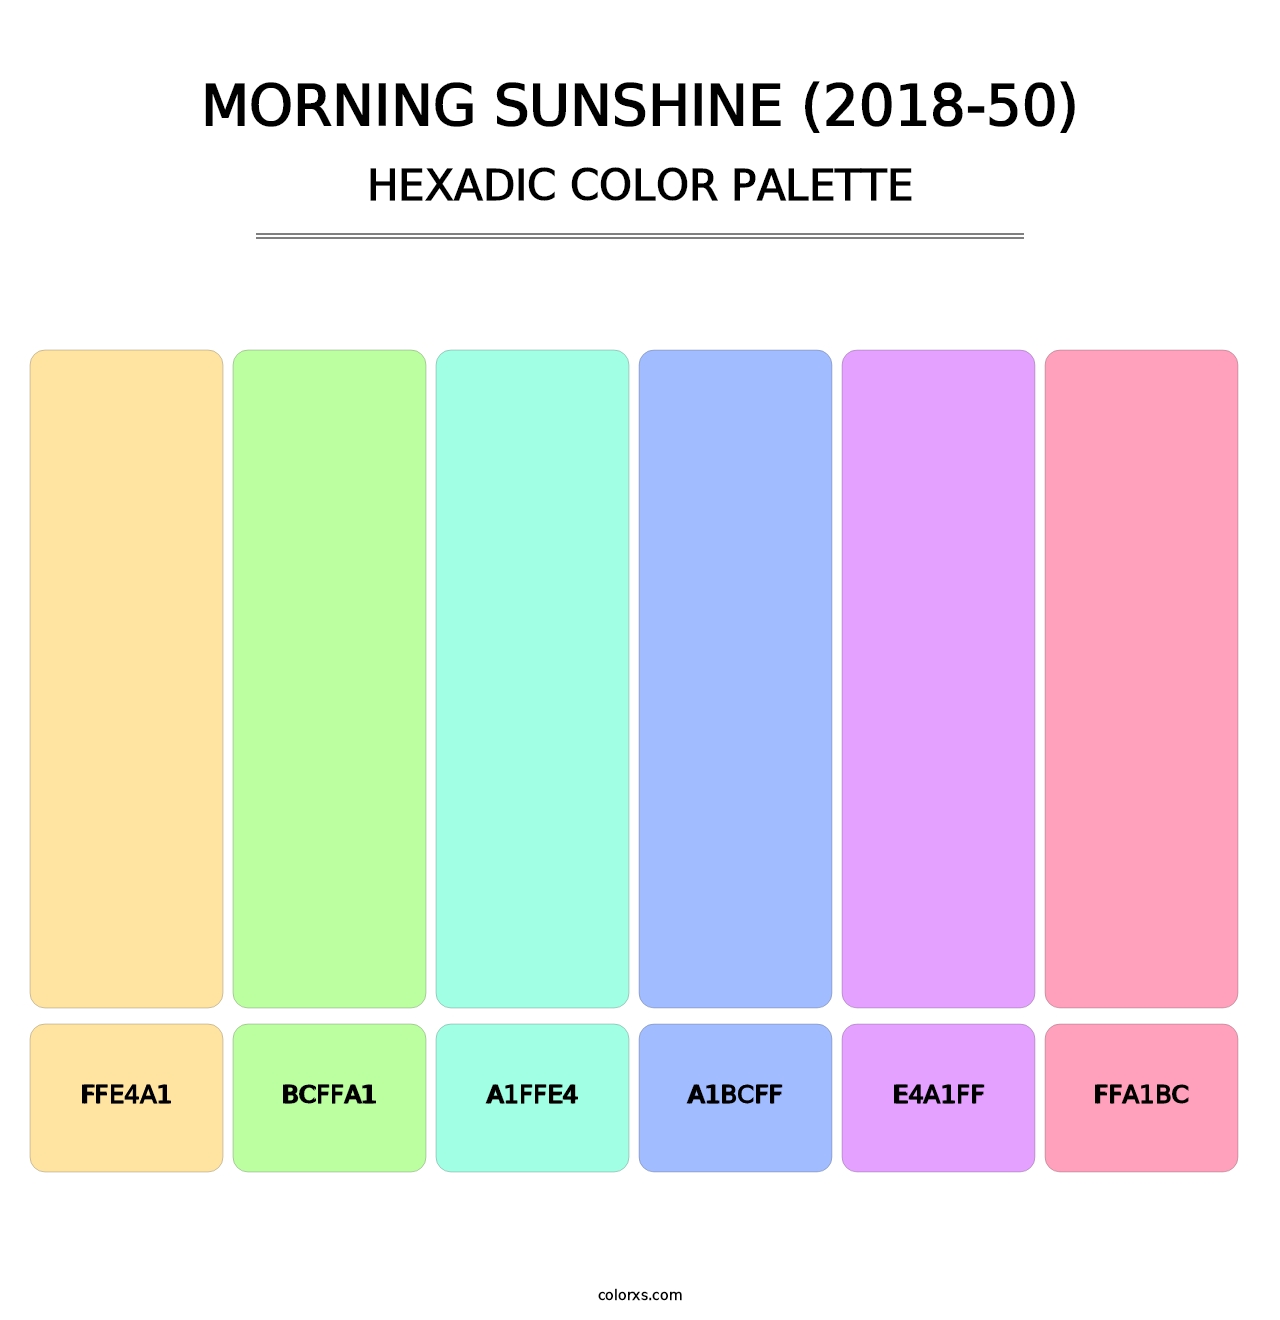 Morning Sunshine (2018-50) - Hexadic Color Palette